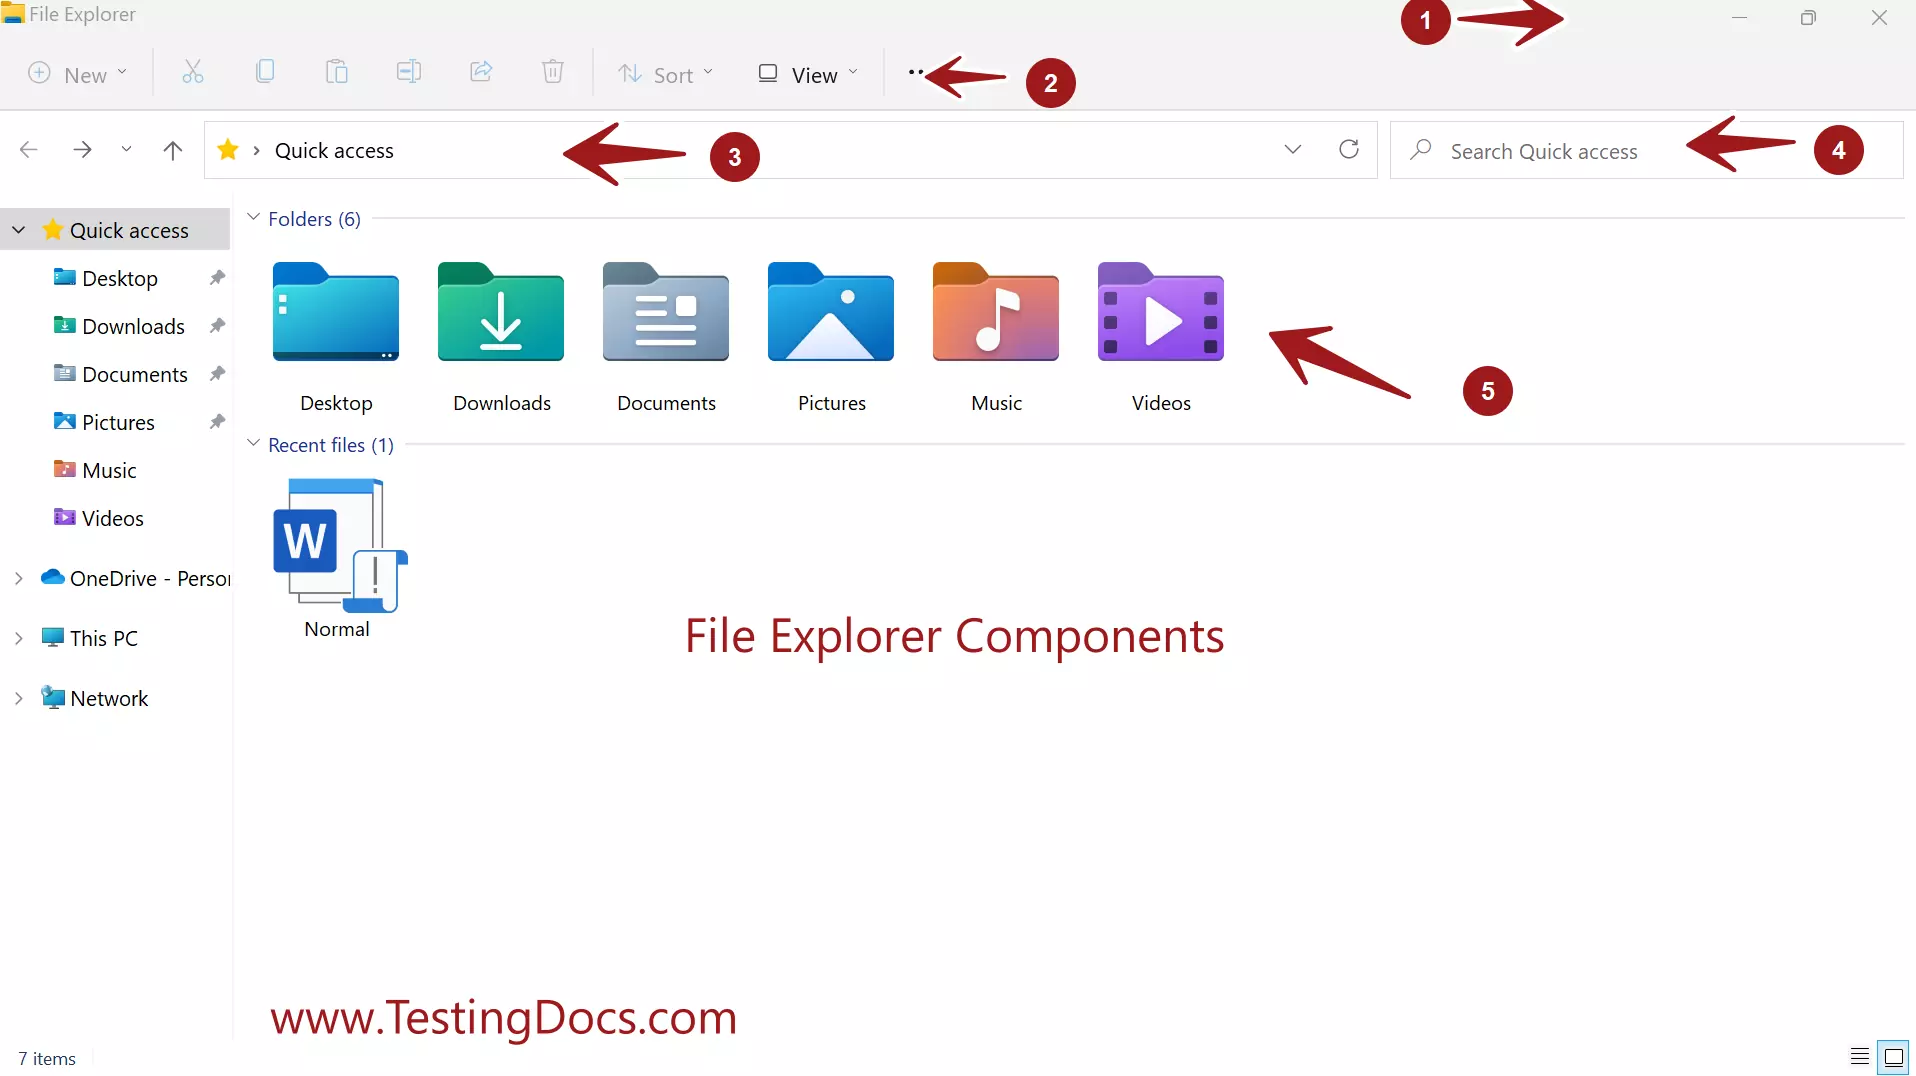 File Explorer Components